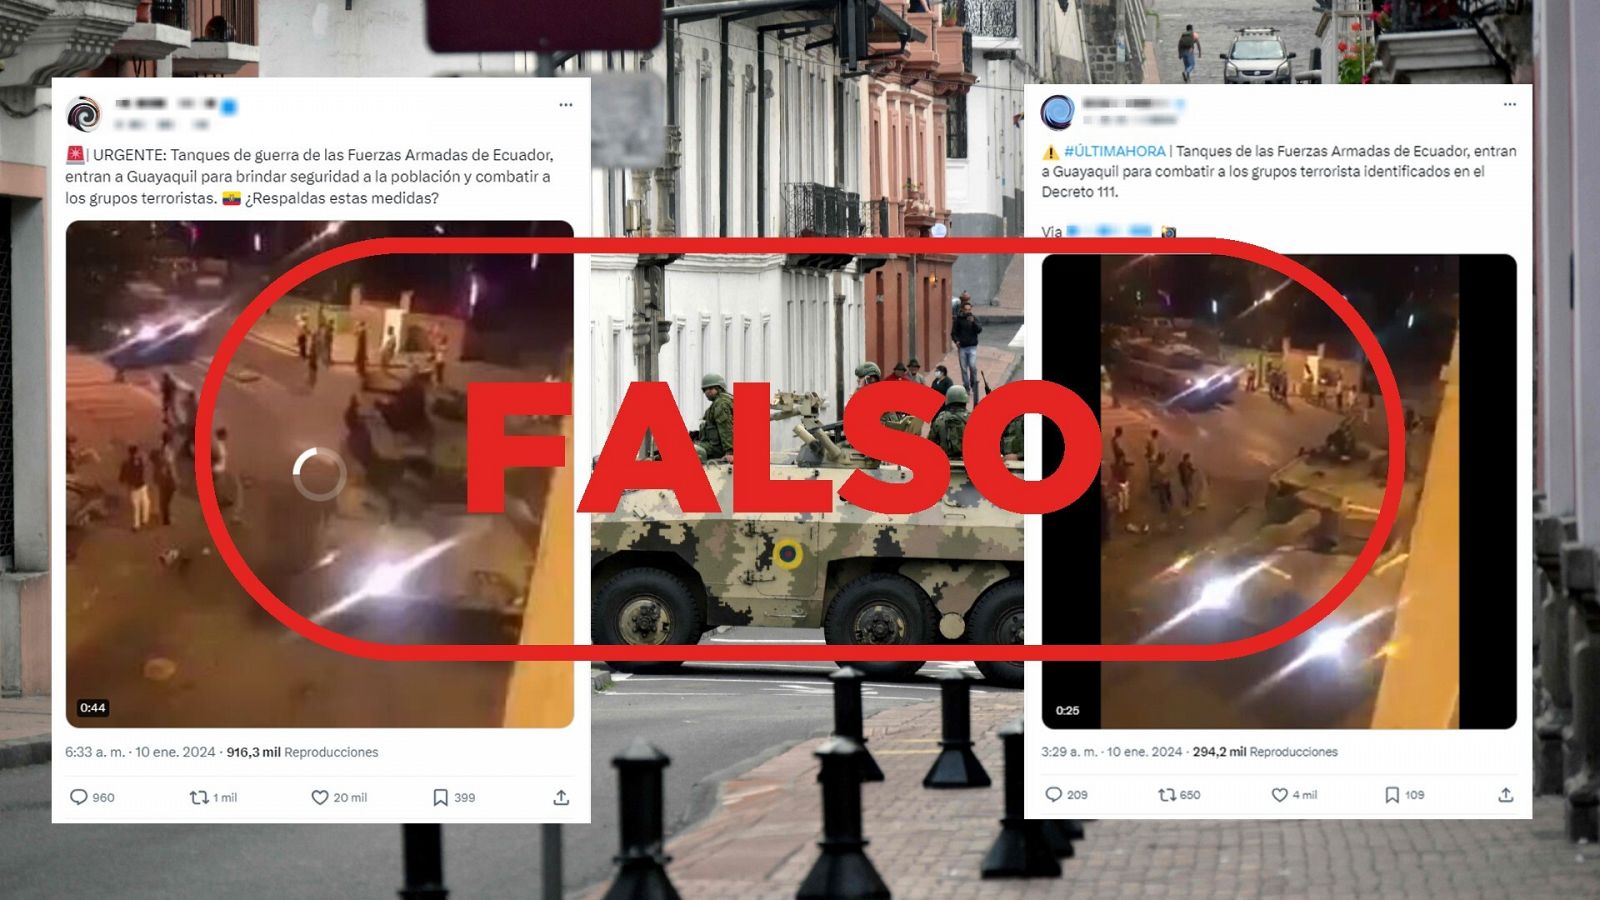 Conflicto armado en Ecuador: este vídeo de tanques es antiguo y no está grabado en Guayaquil, con el sello Falso en rojo